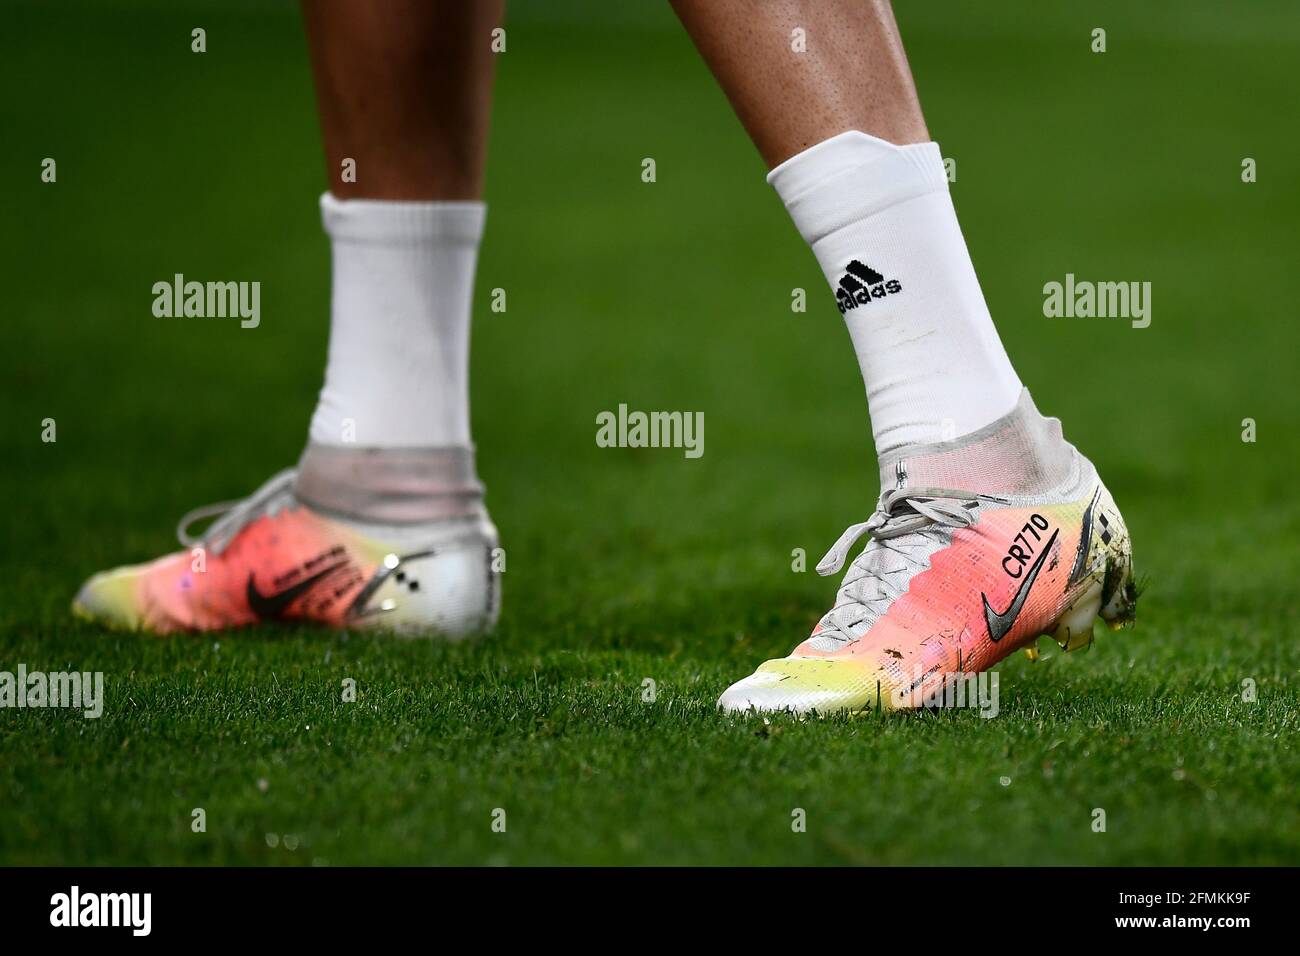 Turín, Italia. 09 de mayo de 2021. Las botas Nike Mercurial personalizadas  con la escritura 'CR770' de Cristiano Ronaldo de Juventus FC se ven durante  el calentamiento antes del partido de fútbol